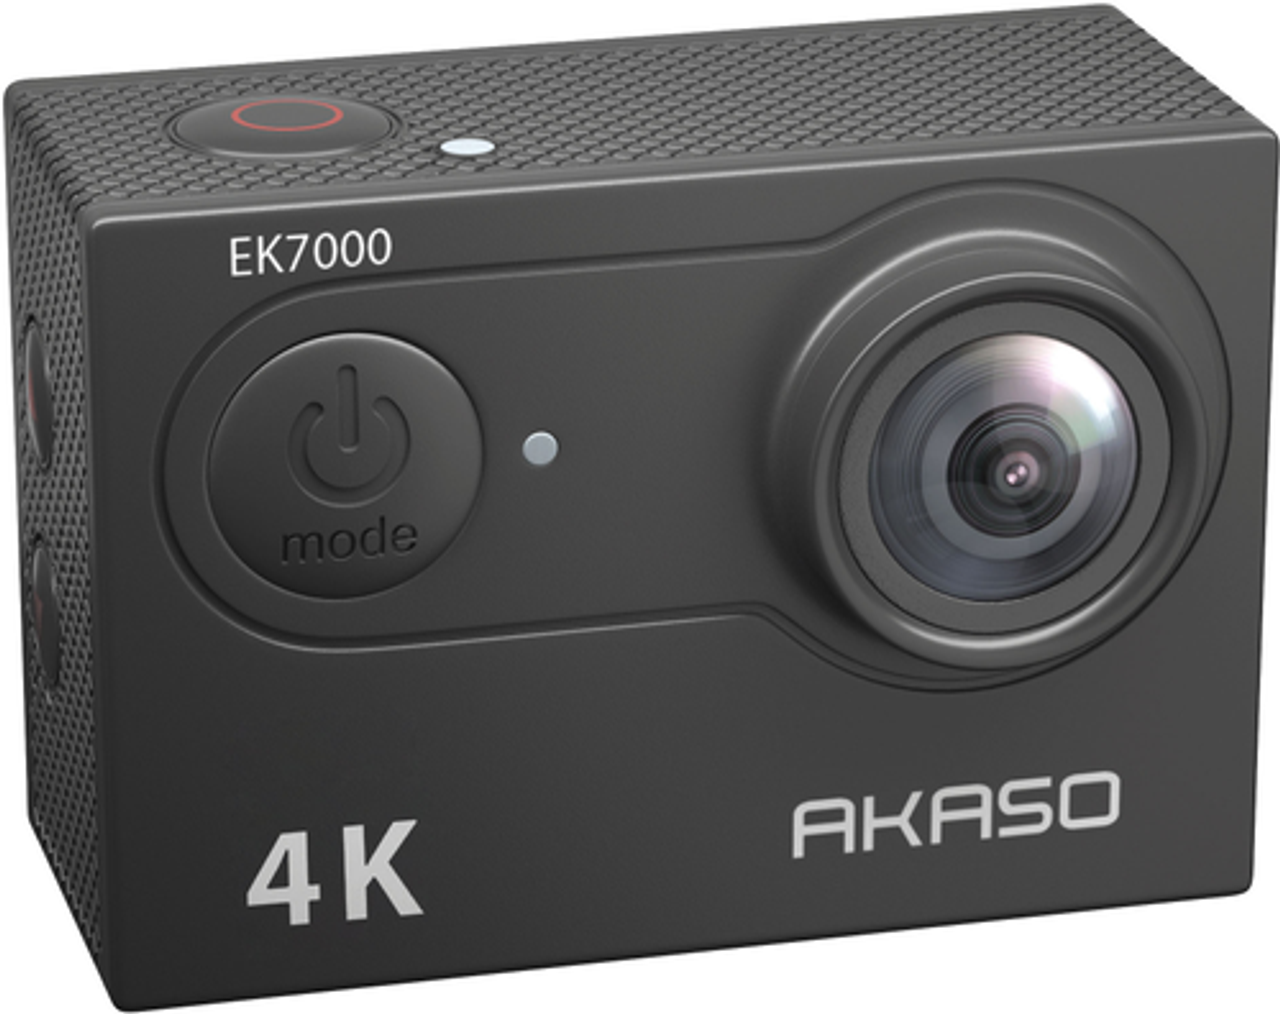 AKASO - EK7000 4K Waterproof Action Camera with Remote